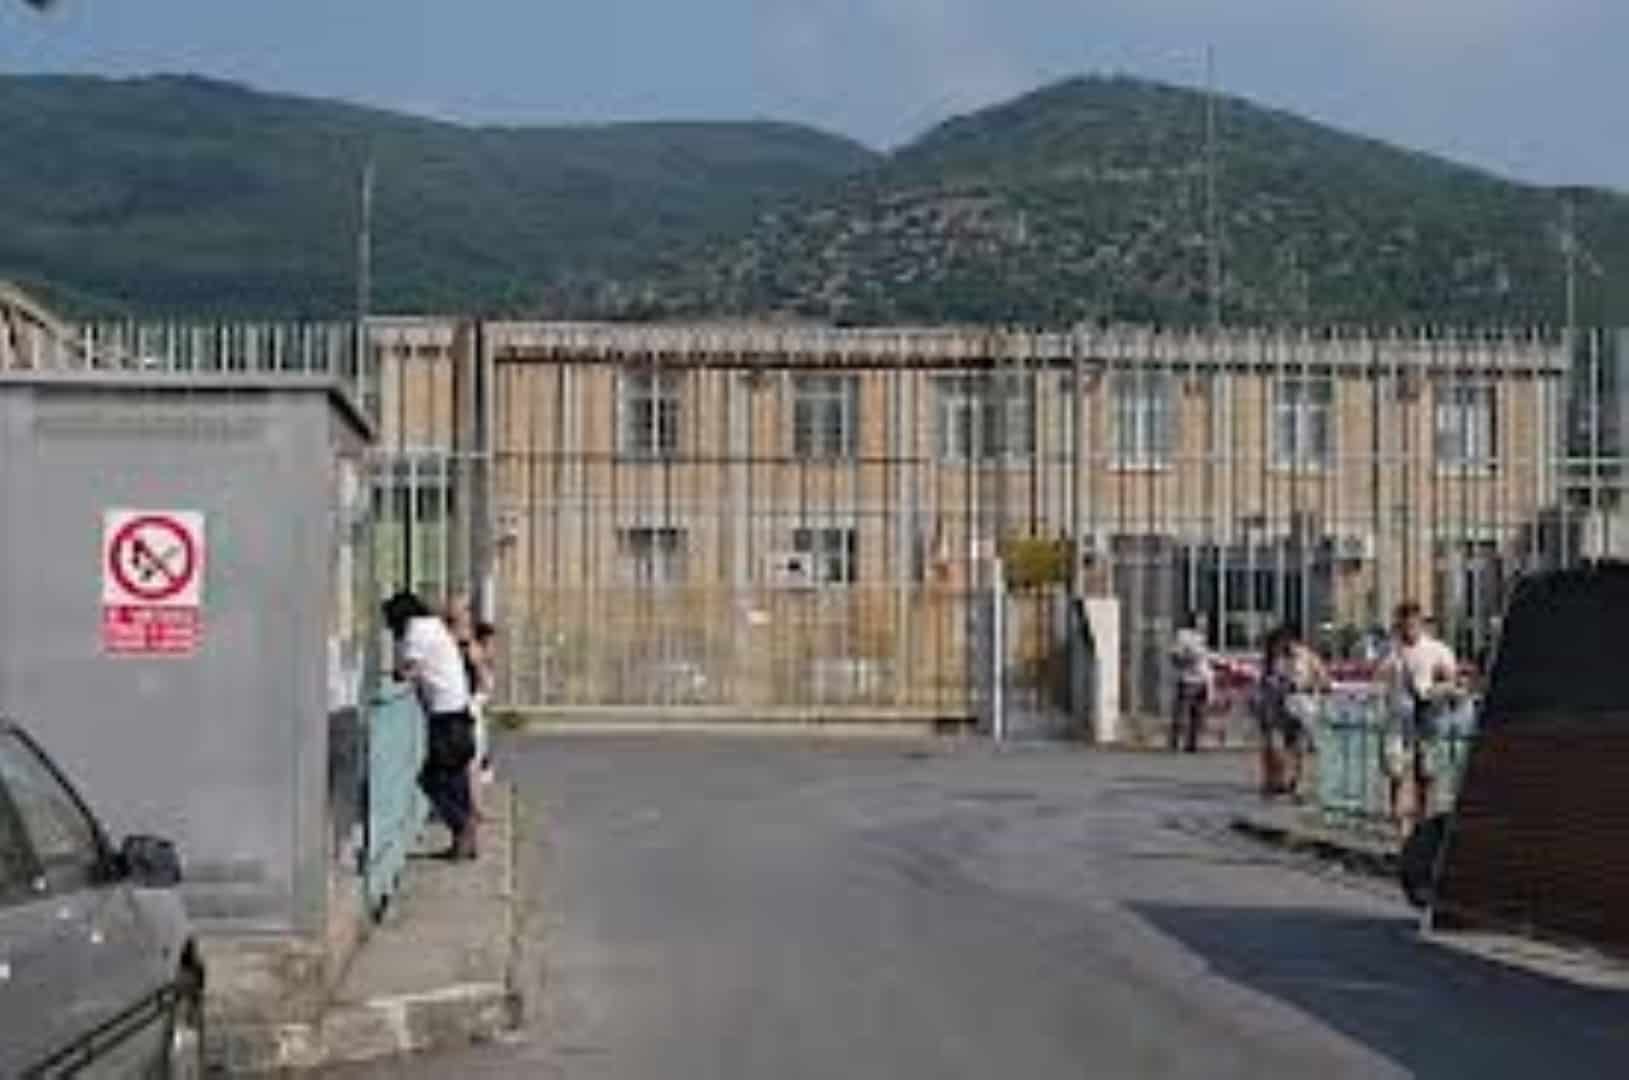 carcere fuorni